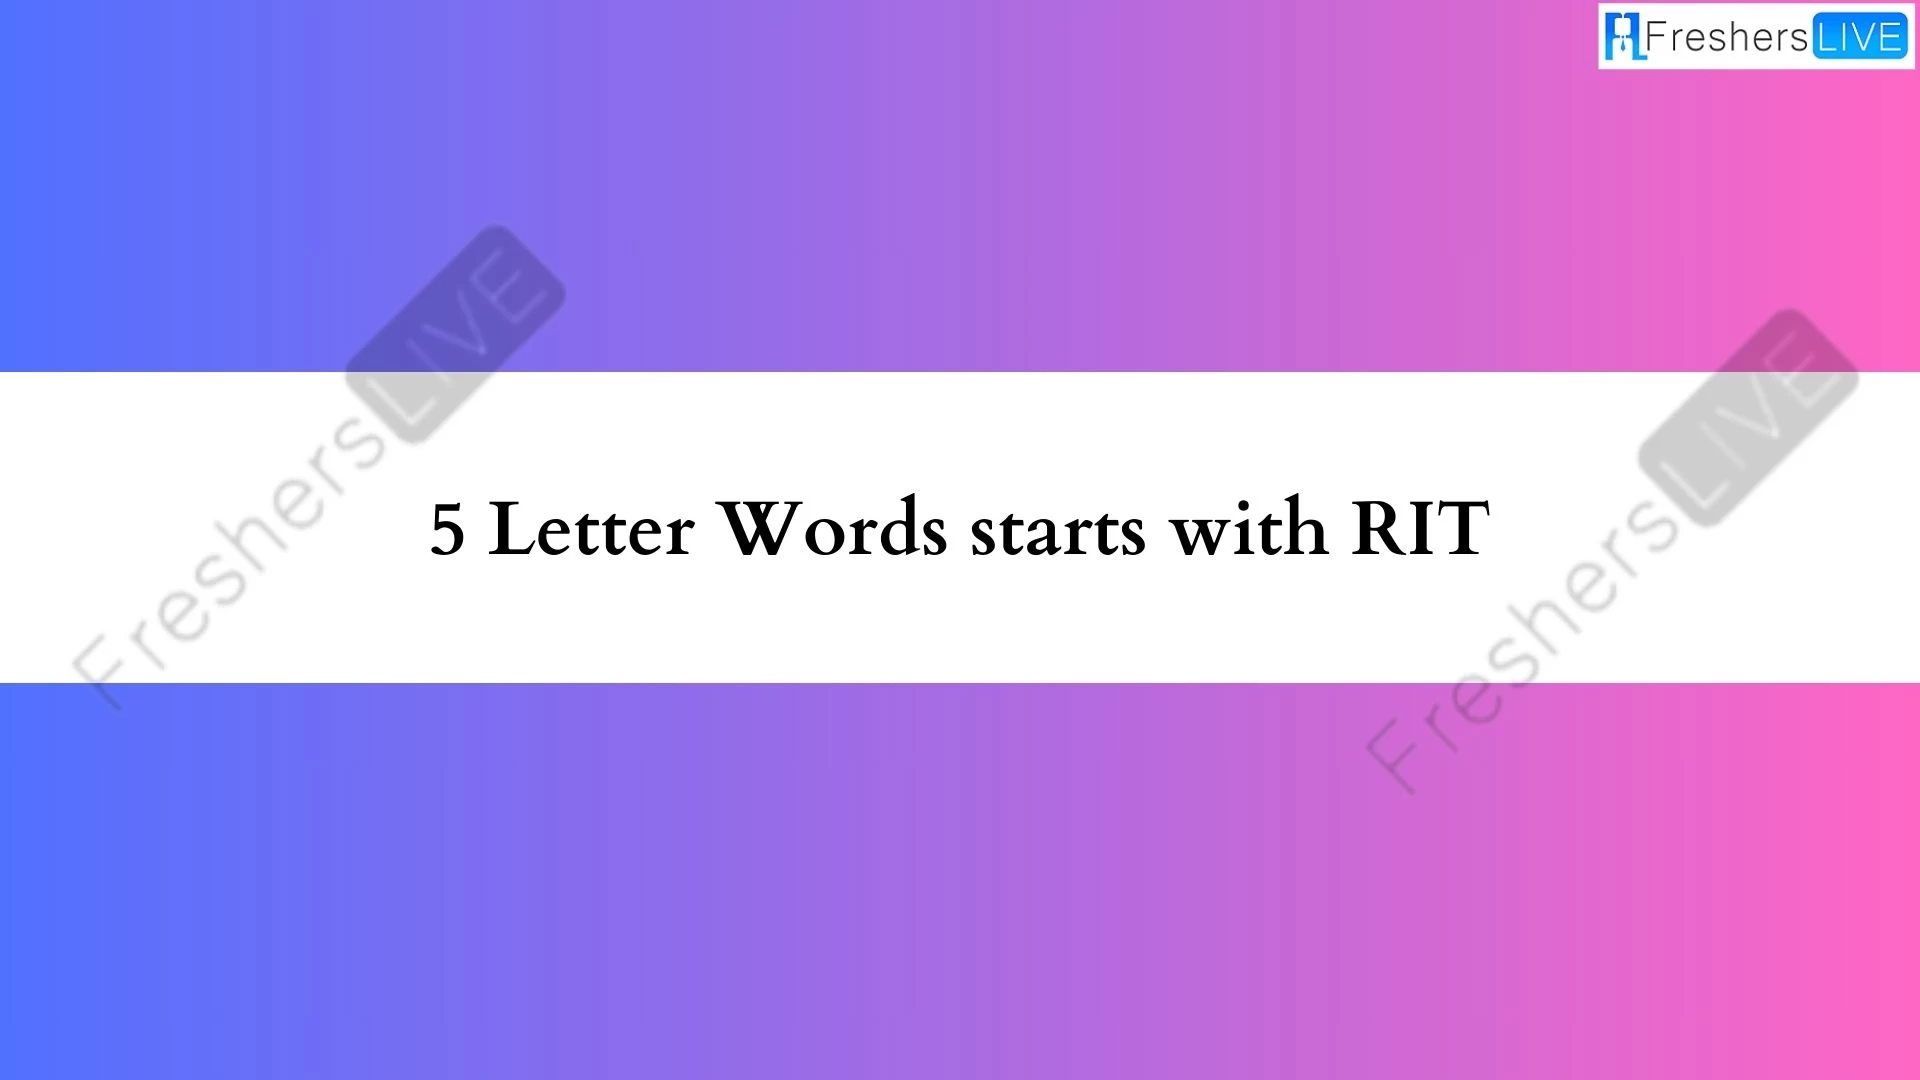 5 - Las palabras con letras comienzan con una lista de todas las palabras RIT